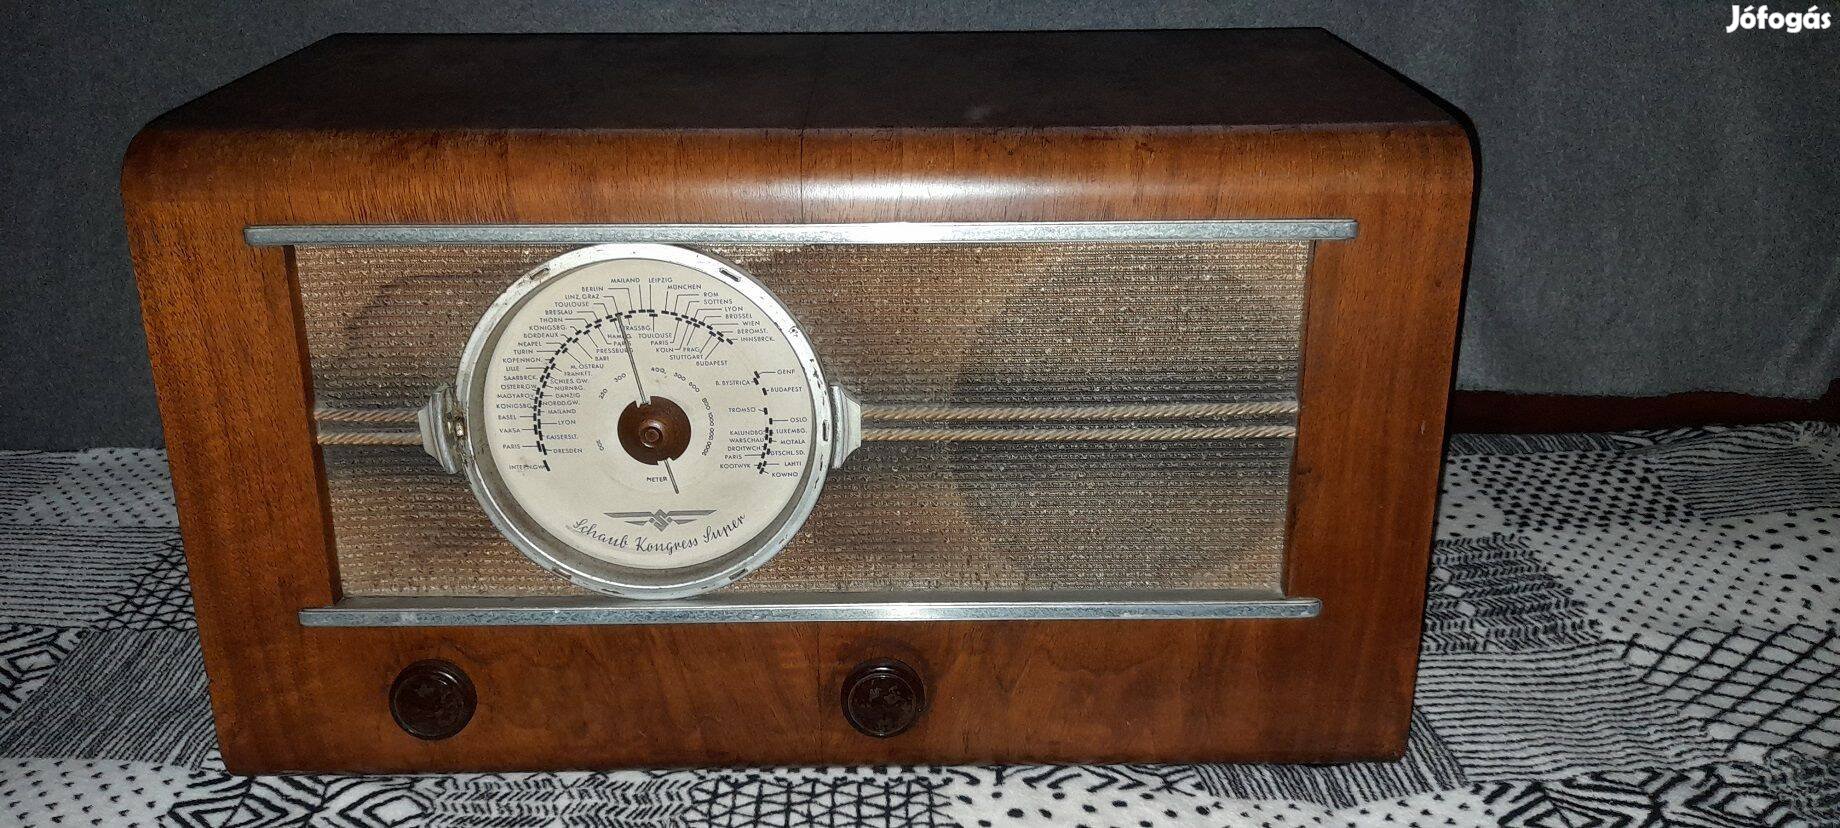 Antik , régi , vintage Schaub Kongress Super csöves rádió 1938